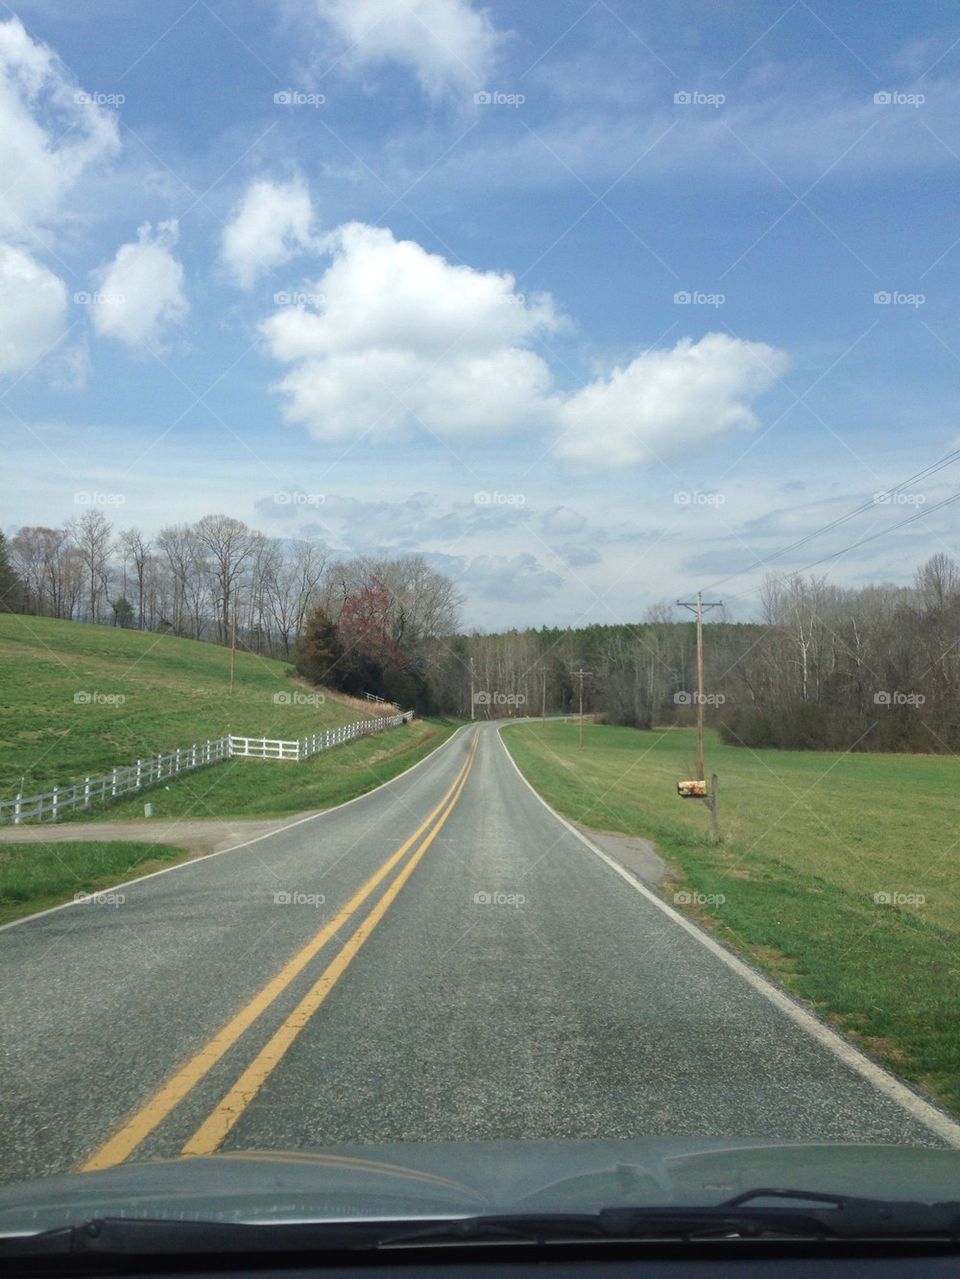 Wide open road